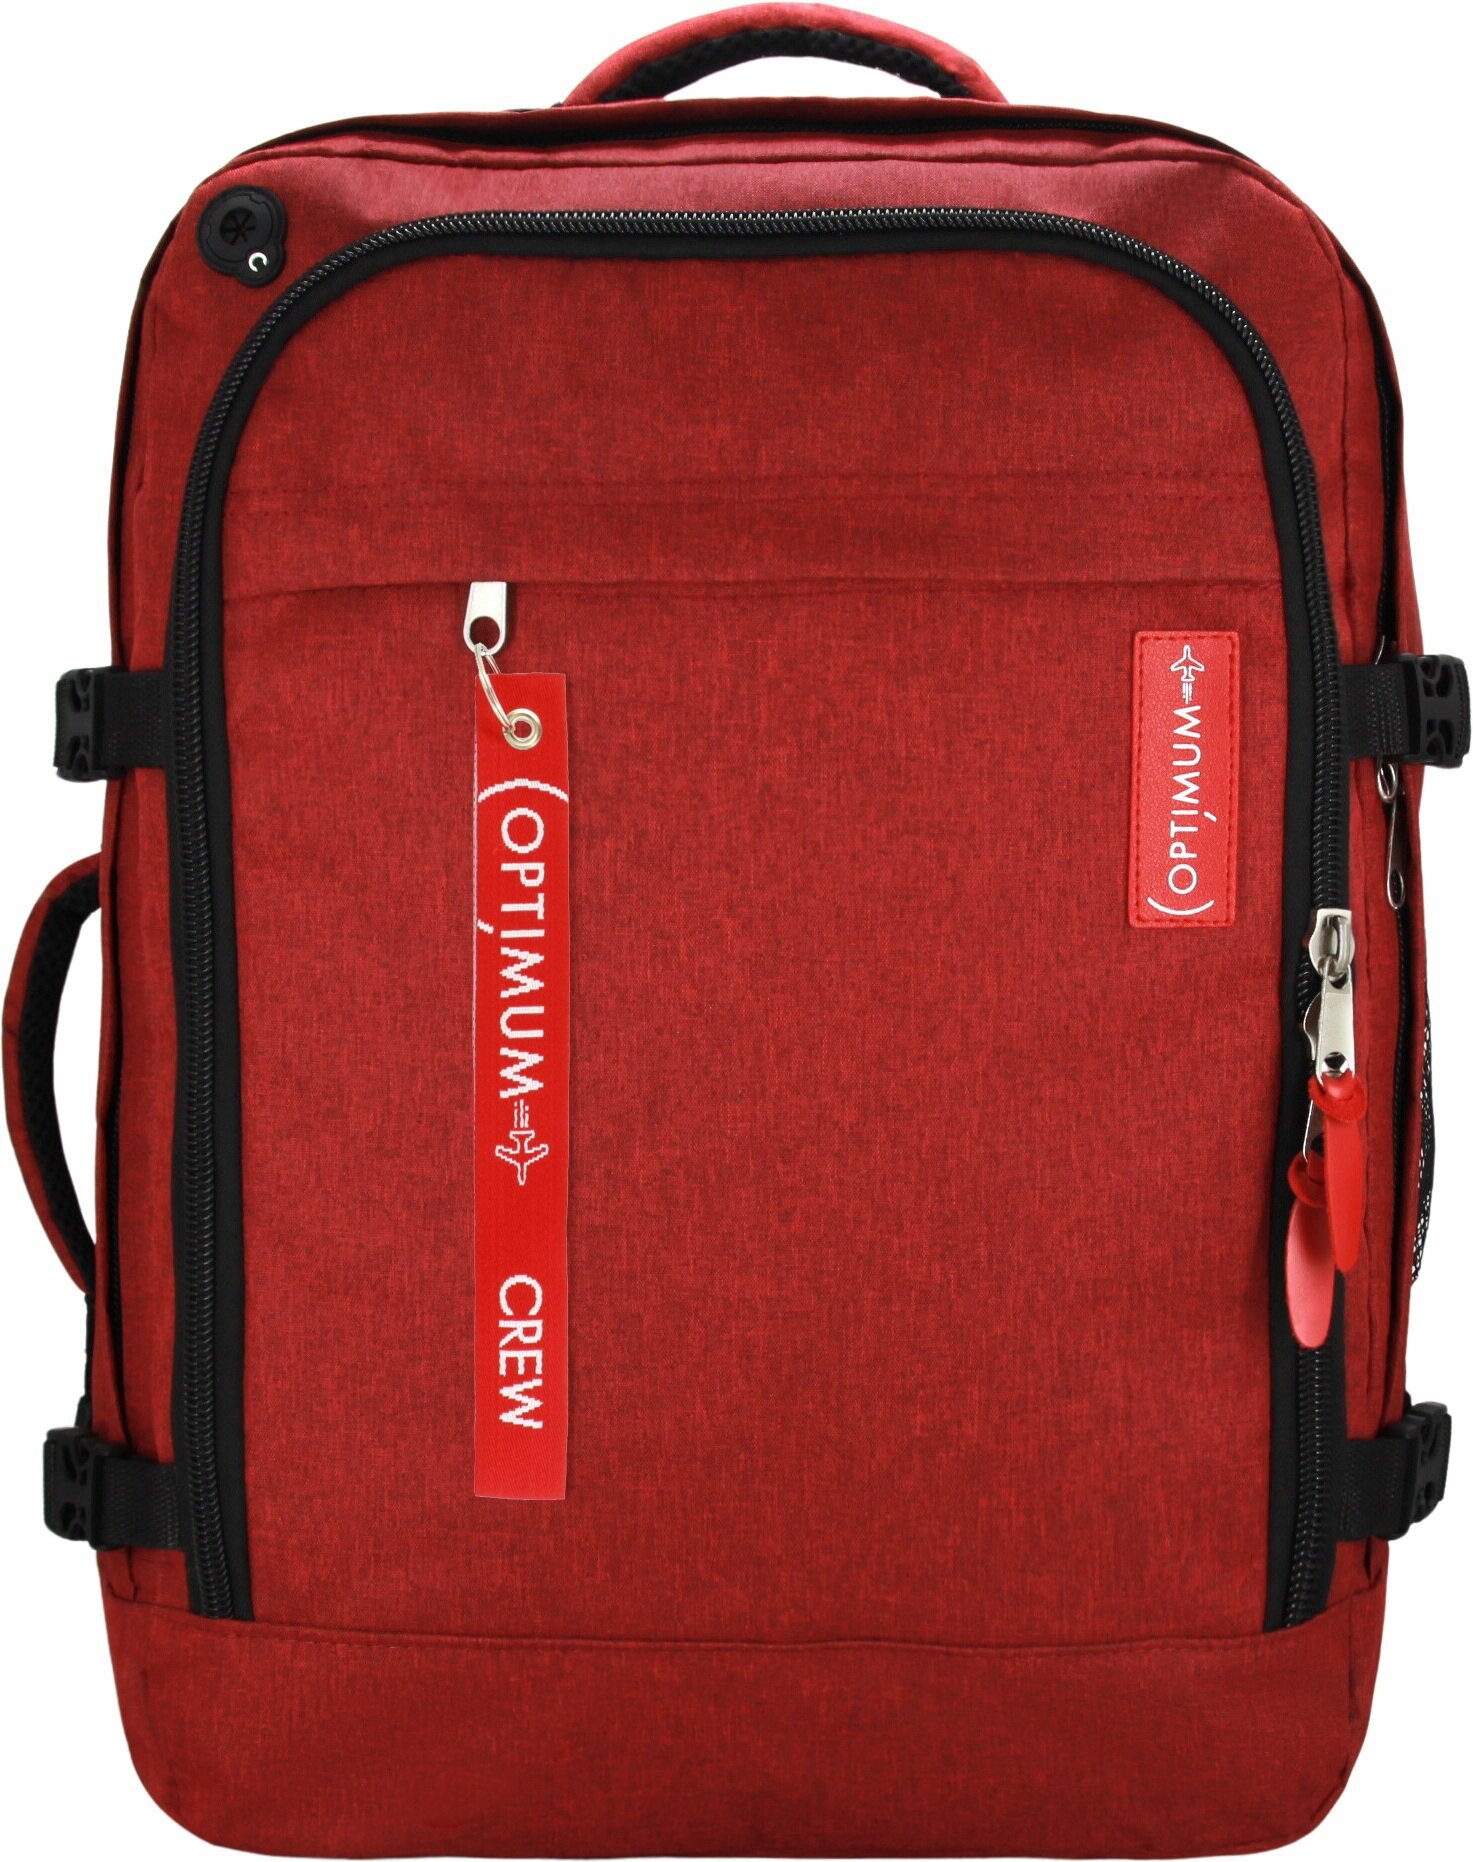 Сумка дорожная сумка-рюкзак Optimum, 44 л, 55х40х20 см, ручная кладь, отделение для ноутбука, фиксирующие ремни, водонепроницаемая, красный - фотография № 6